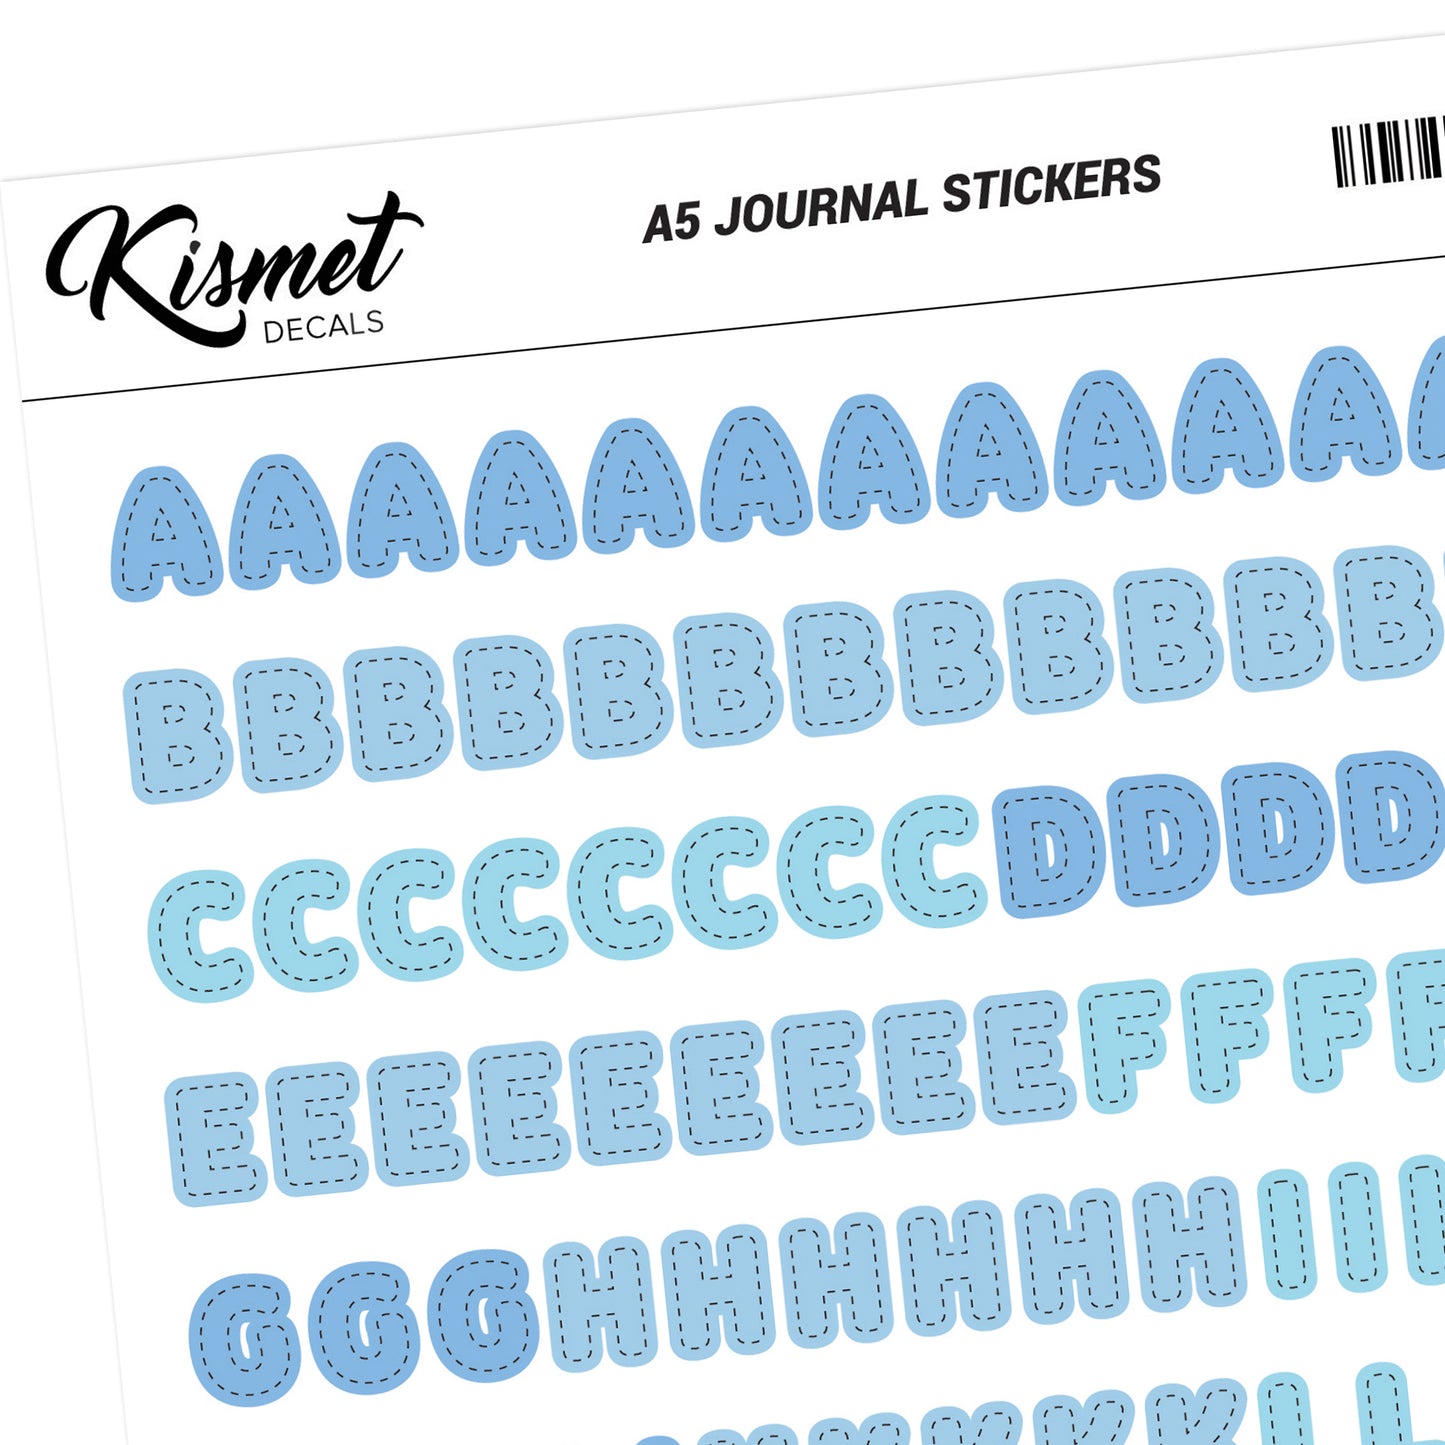 A5 Capital Alphabets Journal Stickers - 5.3" X 8.3" - Craft Scrapbook Junk Journal Snail Mail Planner Journal Diary Paper Sticker Sheet